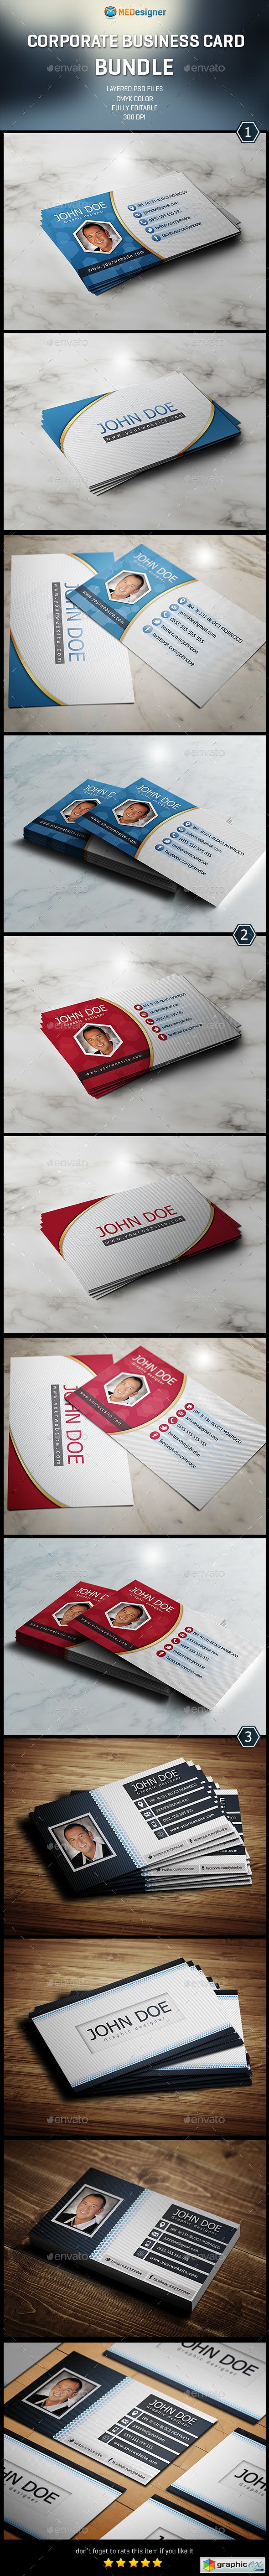 3 Corporate Business Card - Bundle